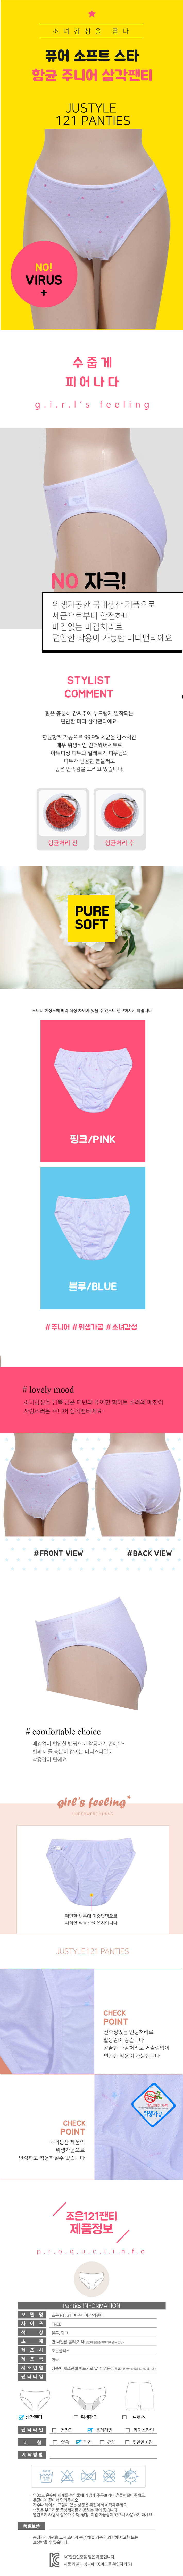 옵션:사이즈,FREE,색상,블루,핑크/제품상세설명